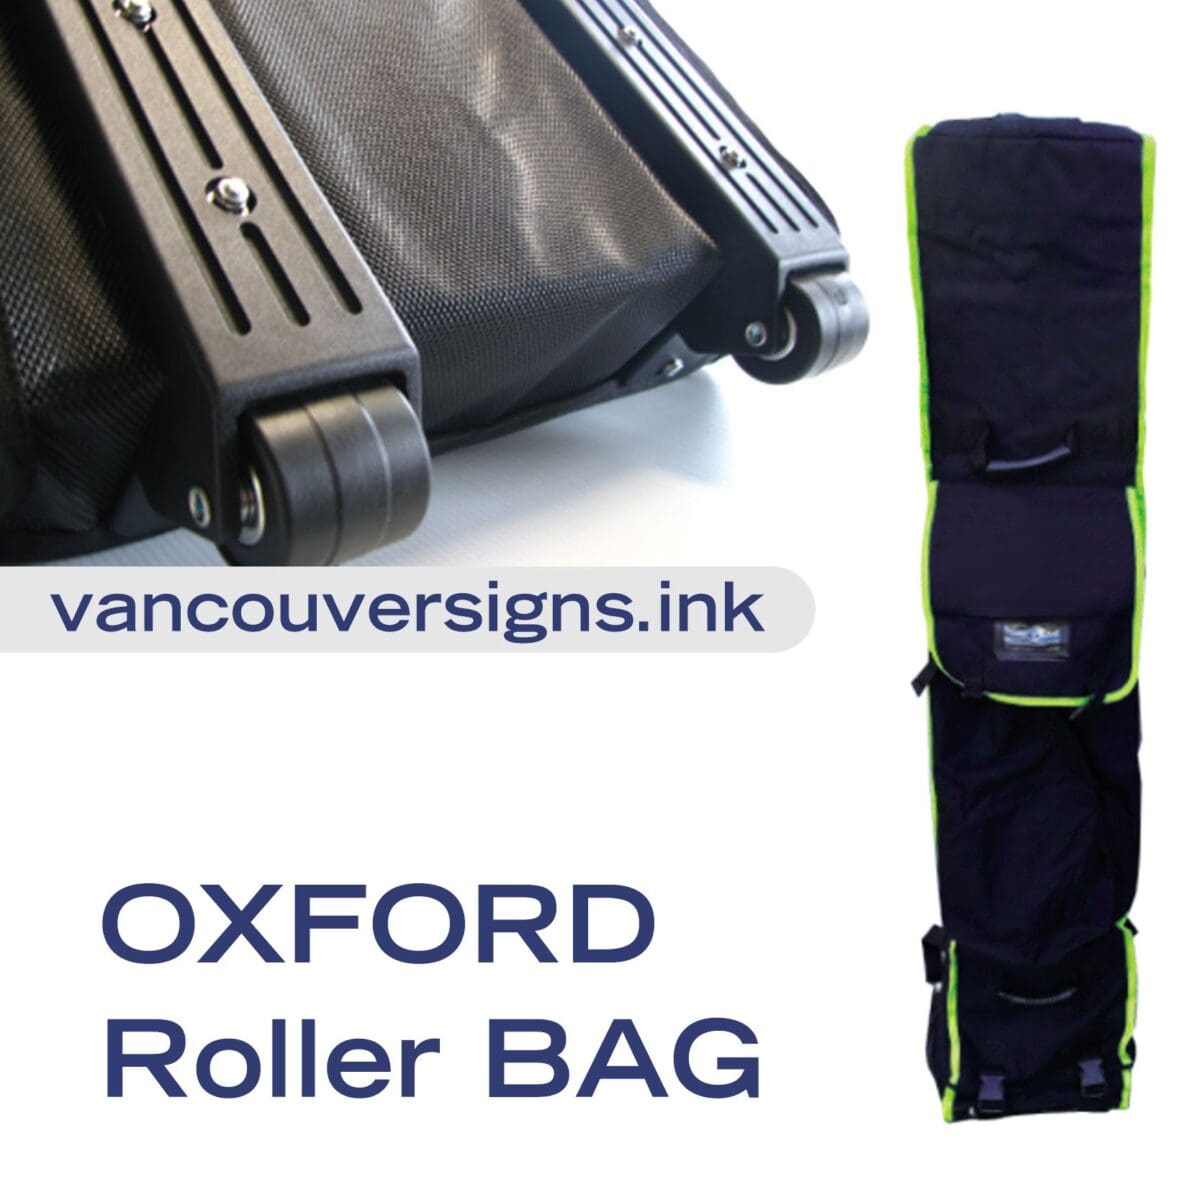 Oxford Roller Bag